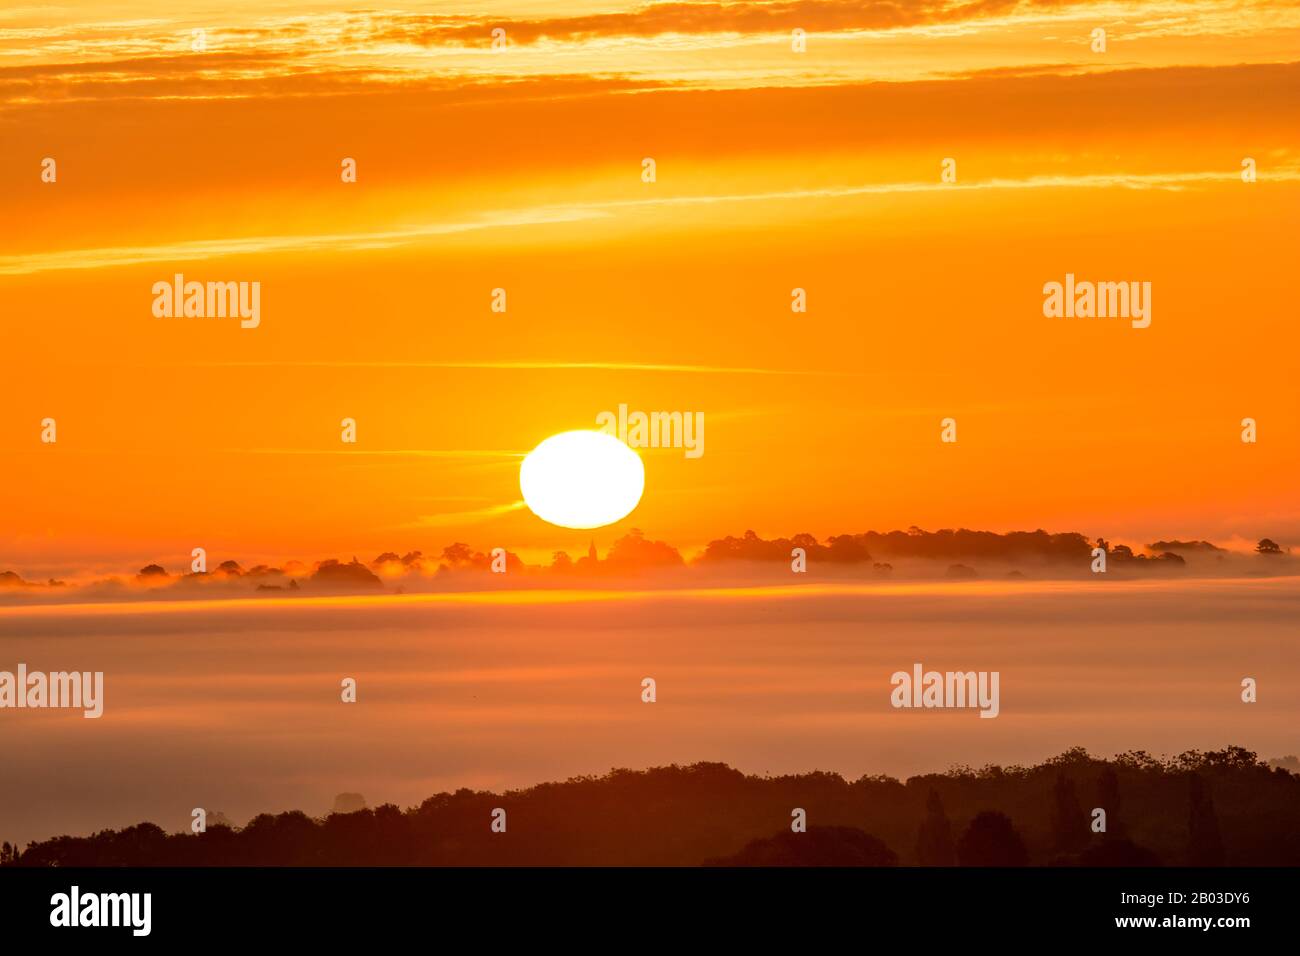 Amazing Sunrise over Shropshire with low lying mist. Stock Photo